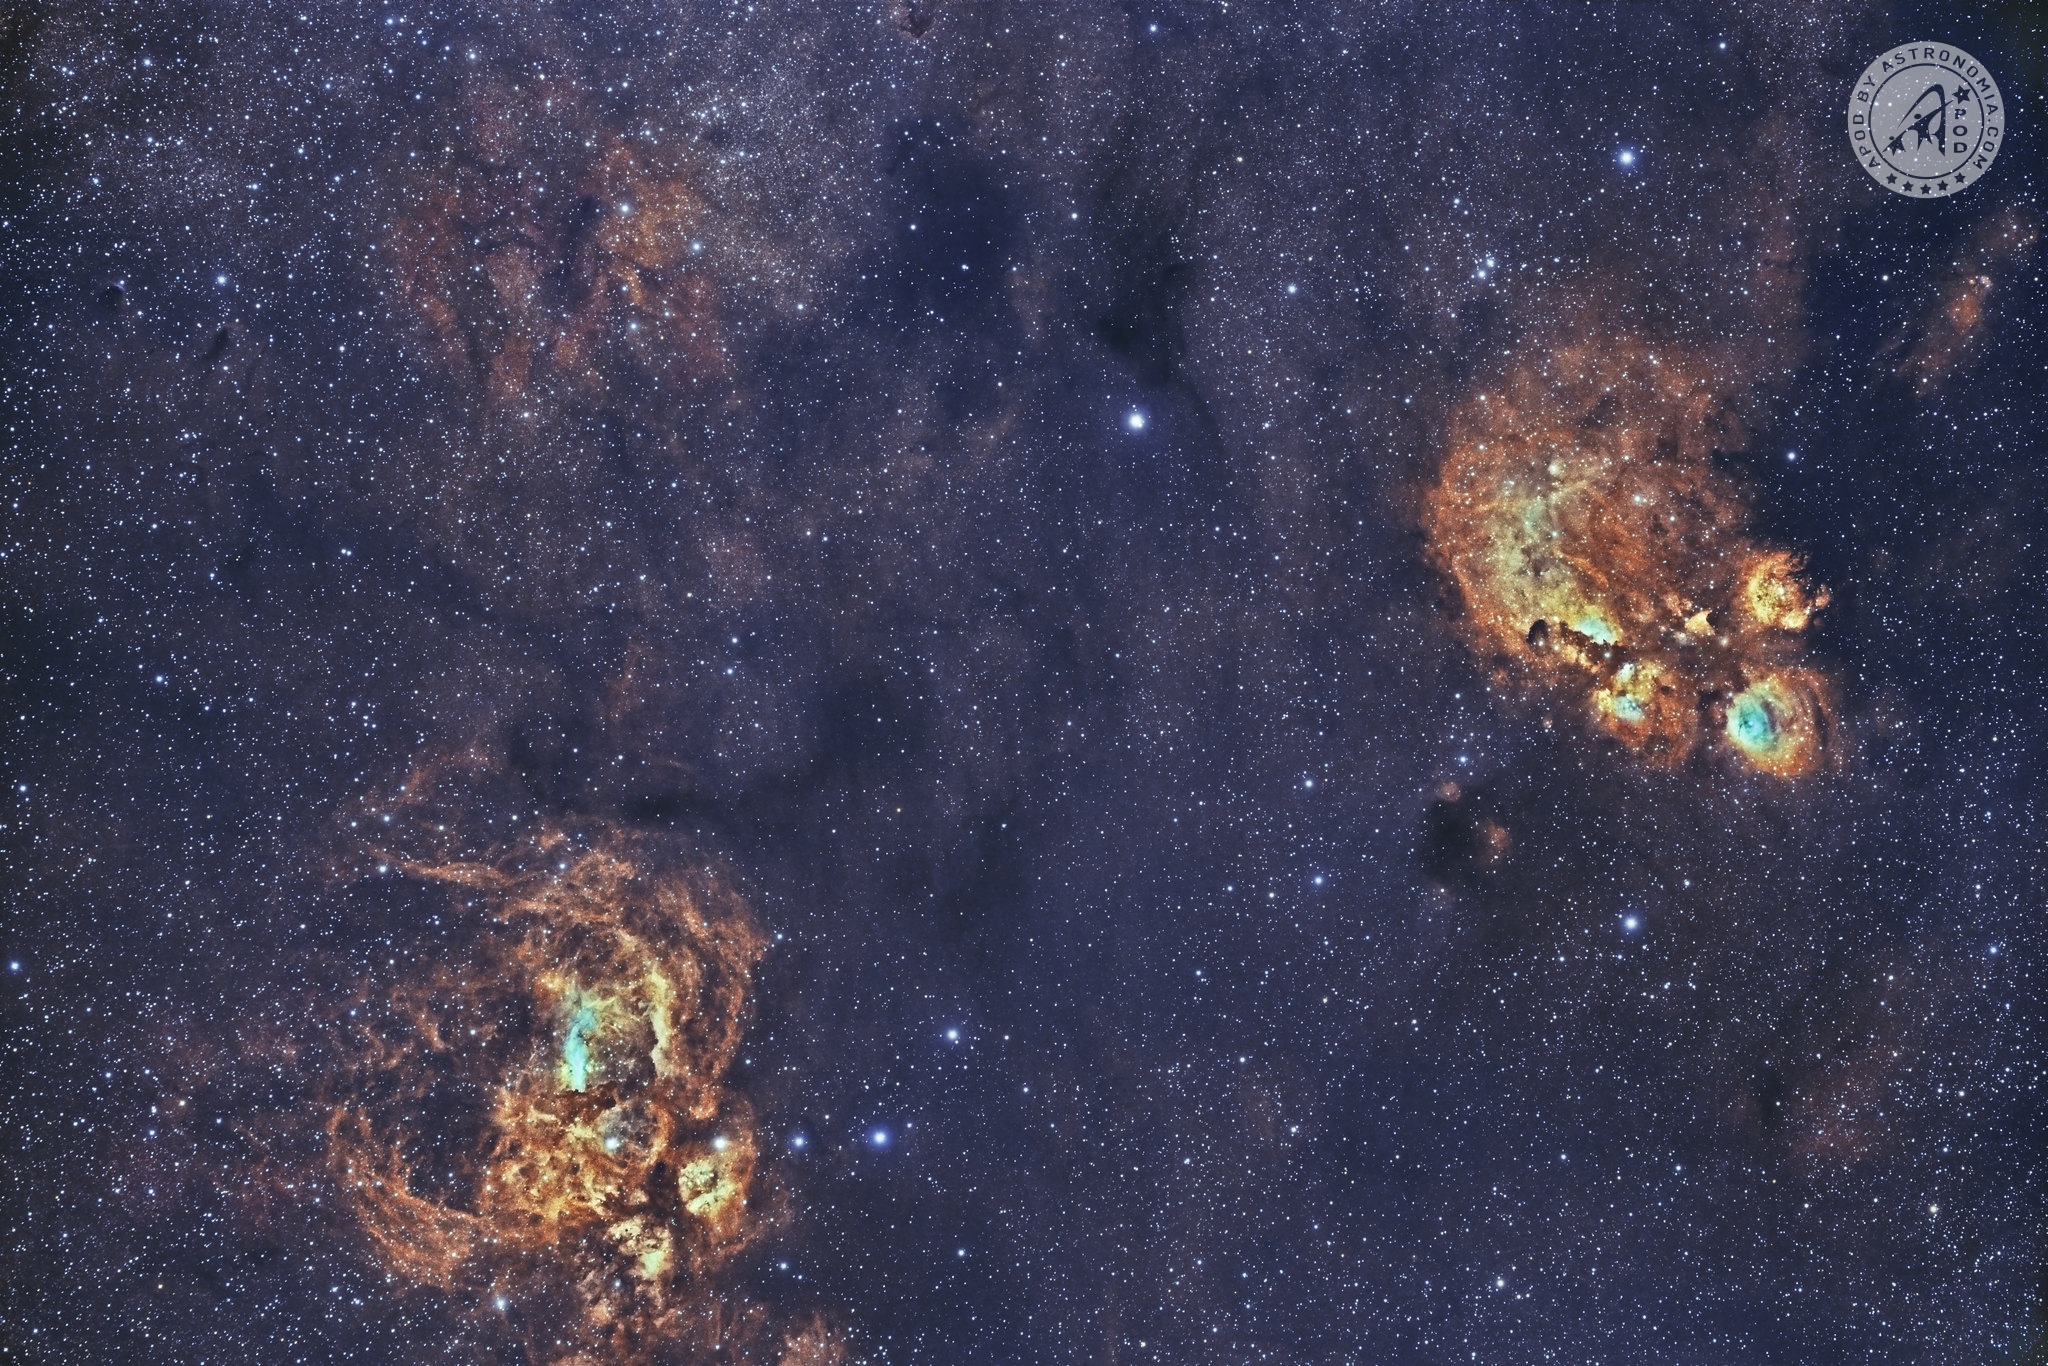 madokami nebula